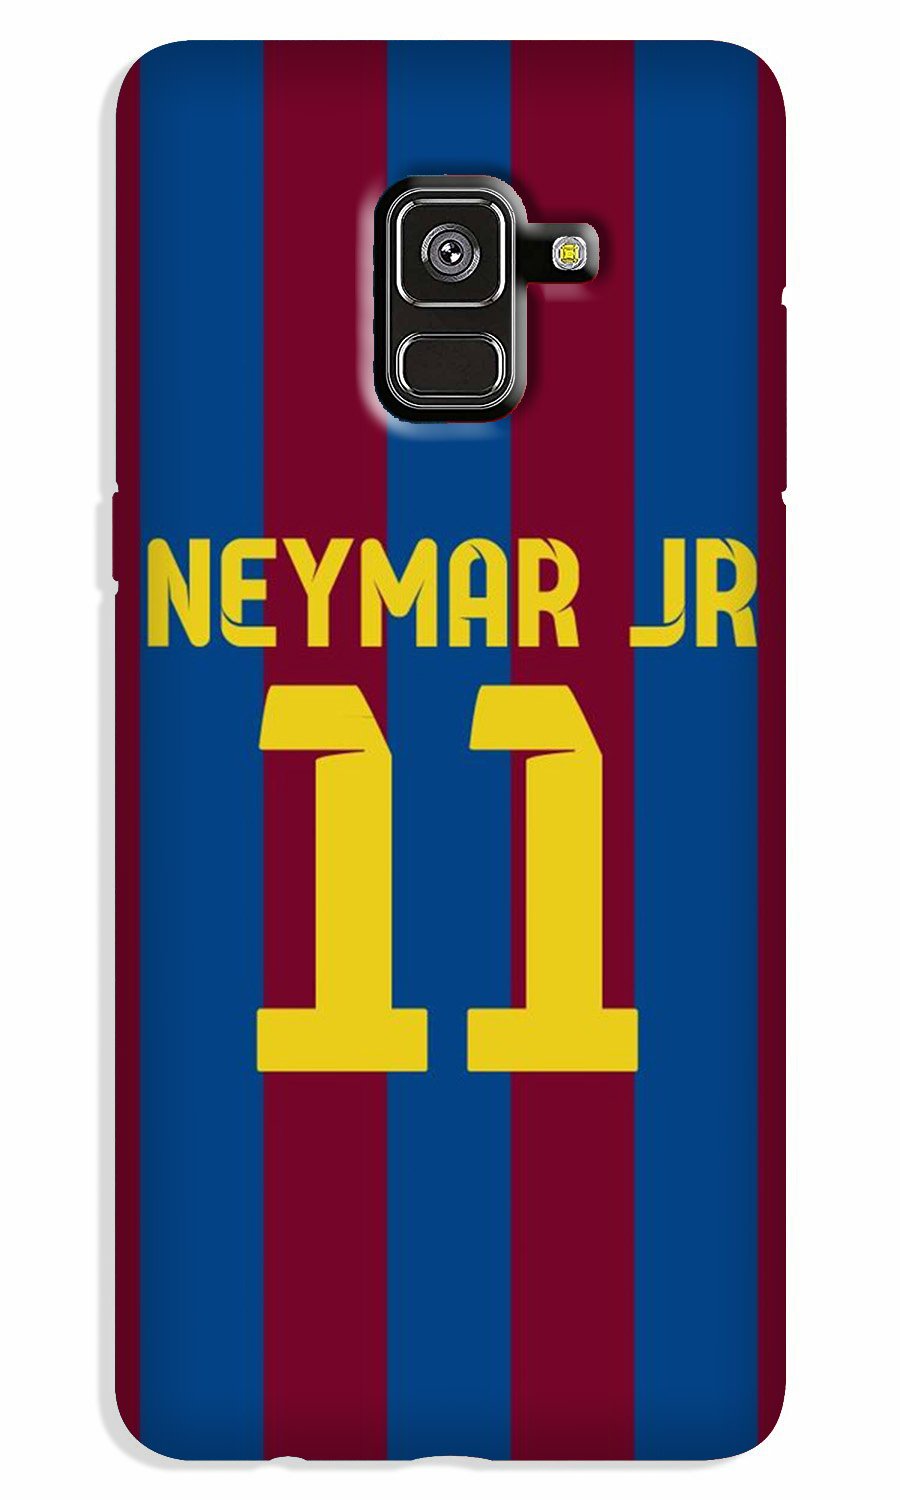 Neymar Jr Case for Galaxy A5 (2018)  (Design - 162)